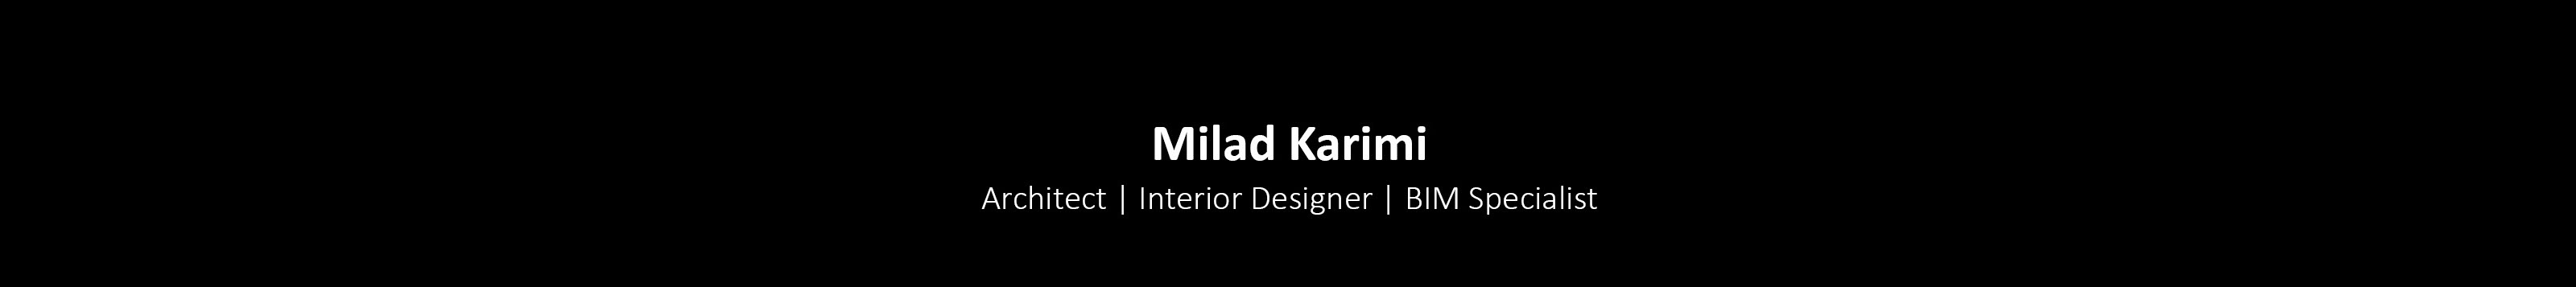 Milad Karimi's profile banner